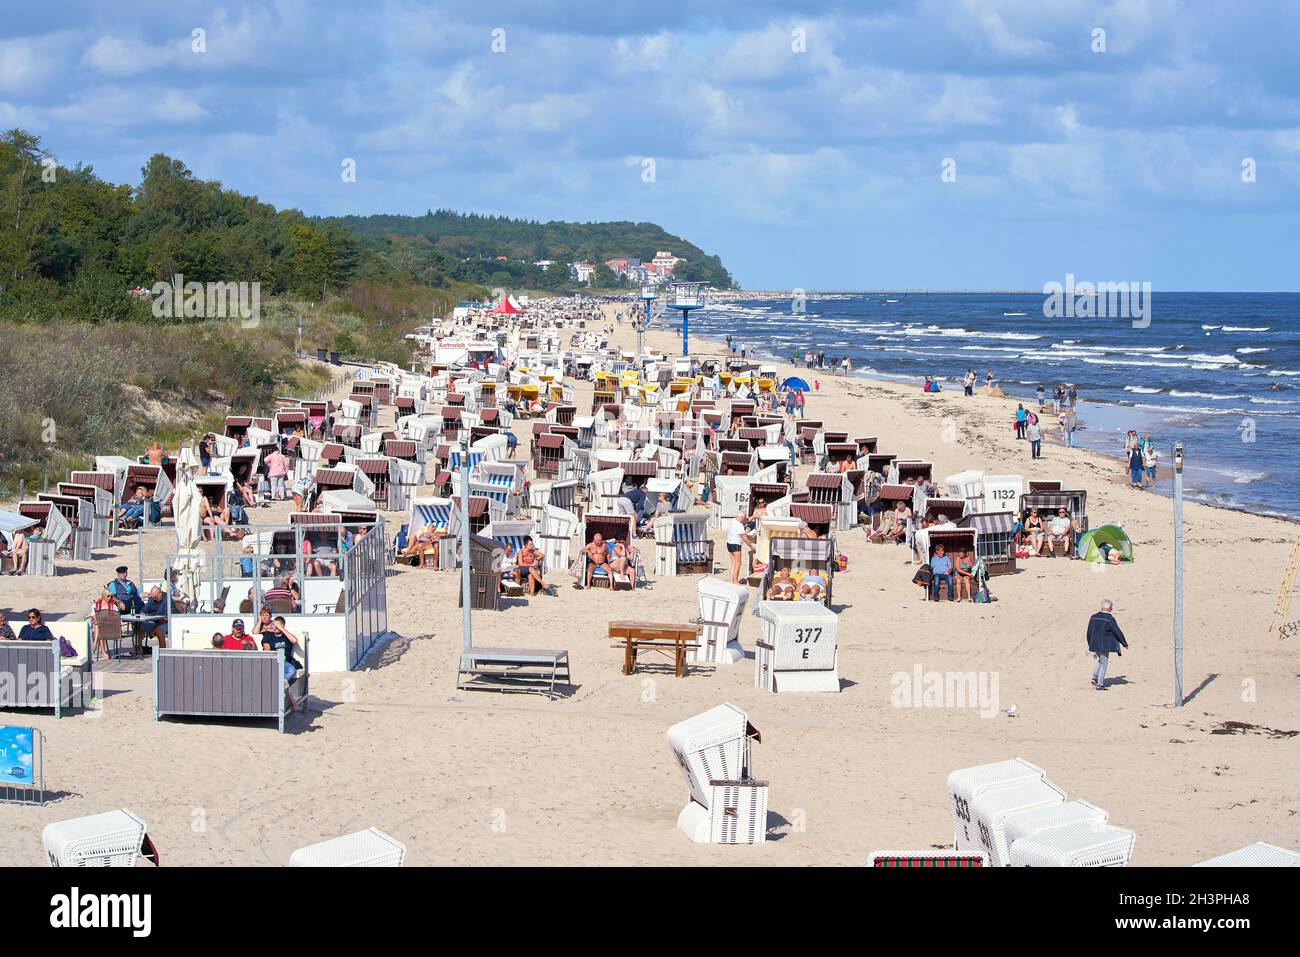 Vacanciers sur la plage bondée d'Heringsdorf sur la côte allemande de la mer Baltique Banque D'Images